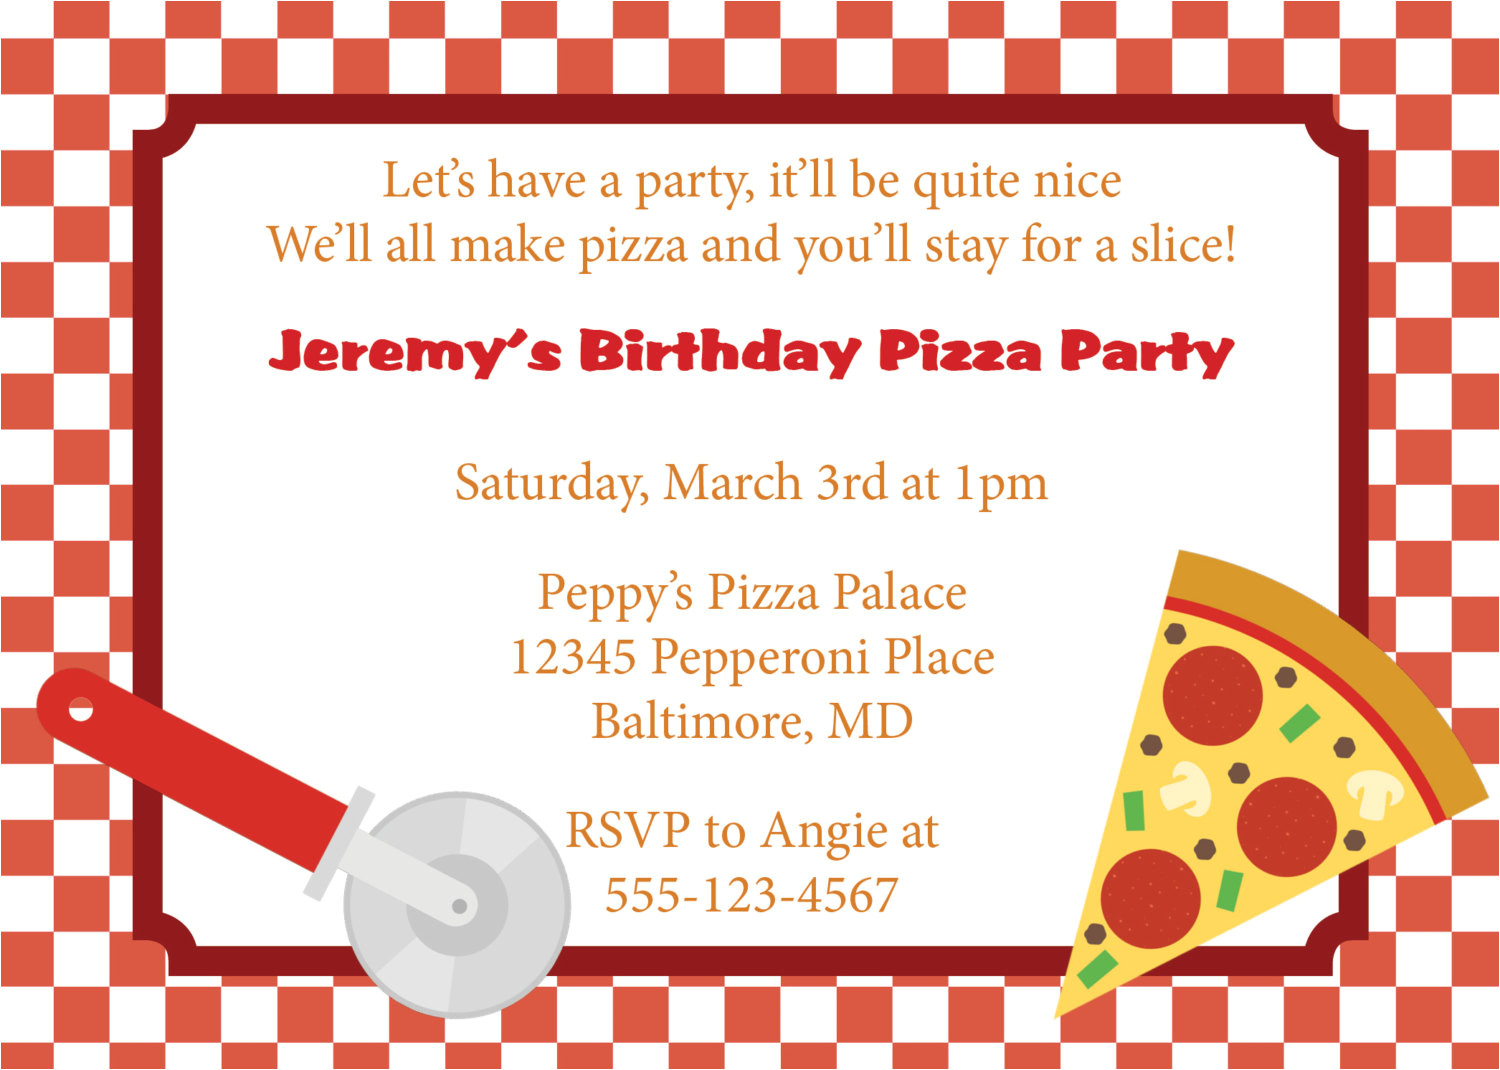 Pizza Party Invitation Template Pizza Party Invitation Invite Diy Printable